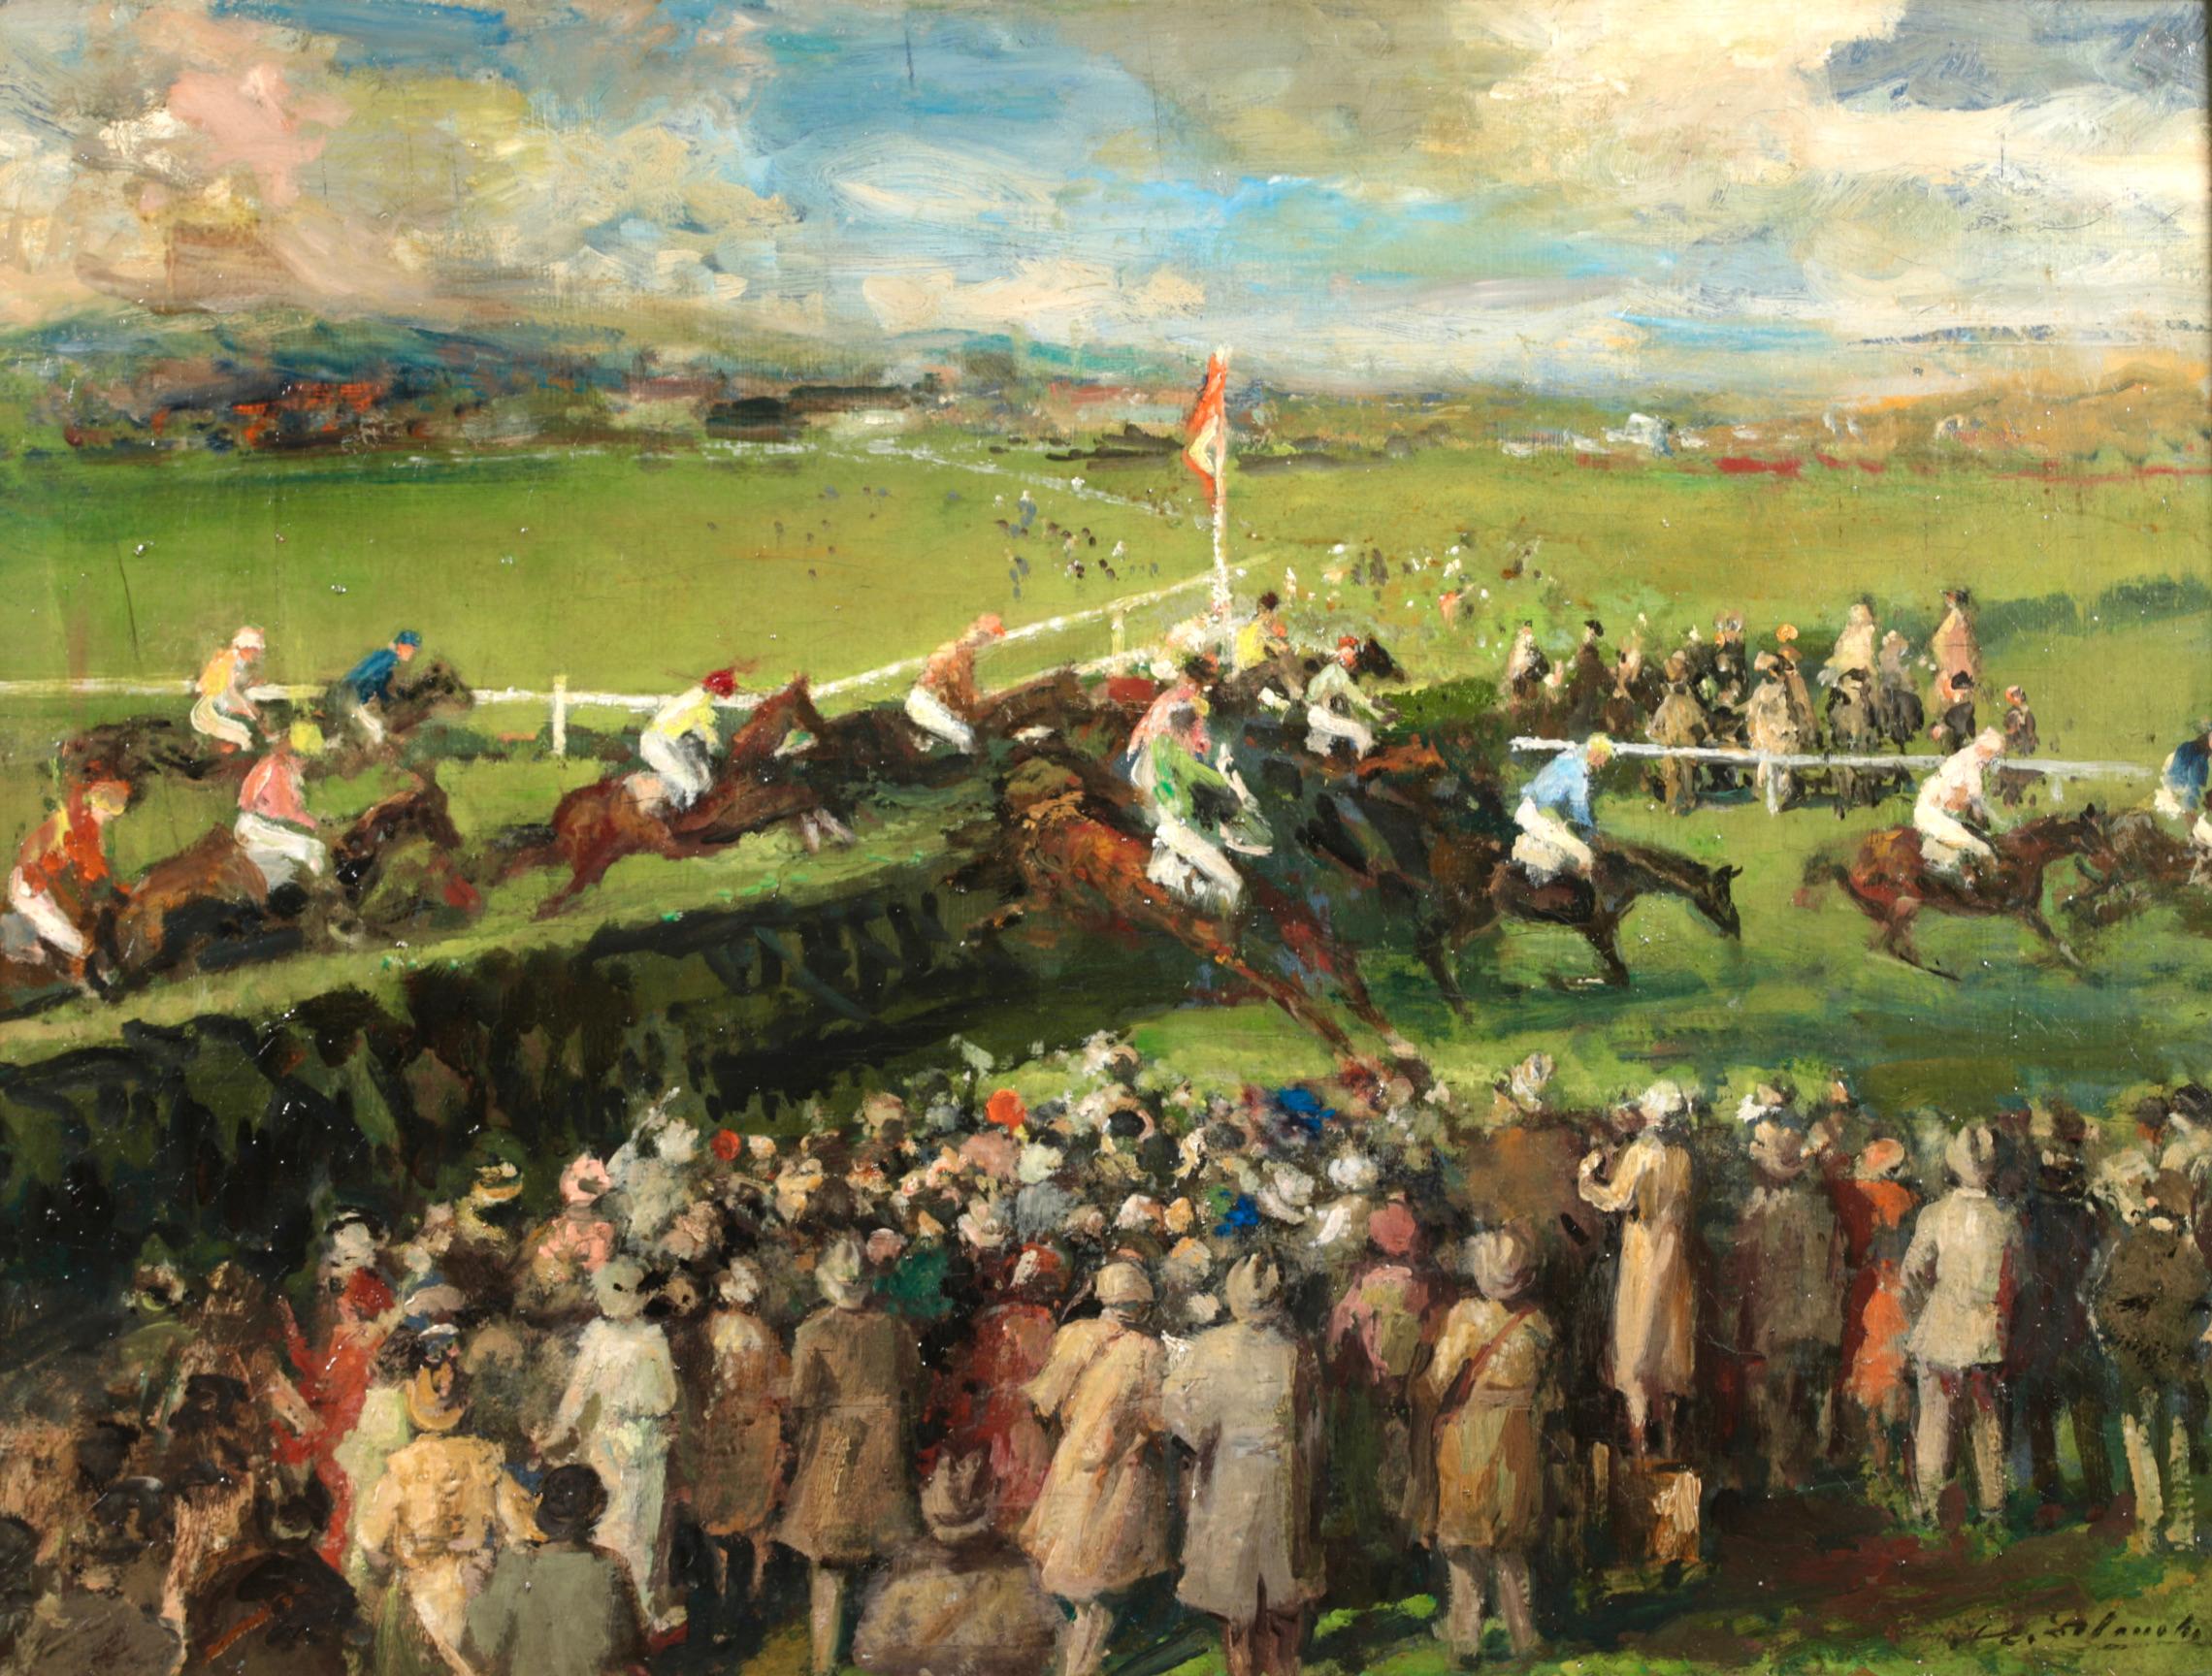 Bei den Rennen – Postimpressionistische Pferde und Figuren, Öl von Jacques-Emile Blanche – Painting von Jacques Emile Blanche